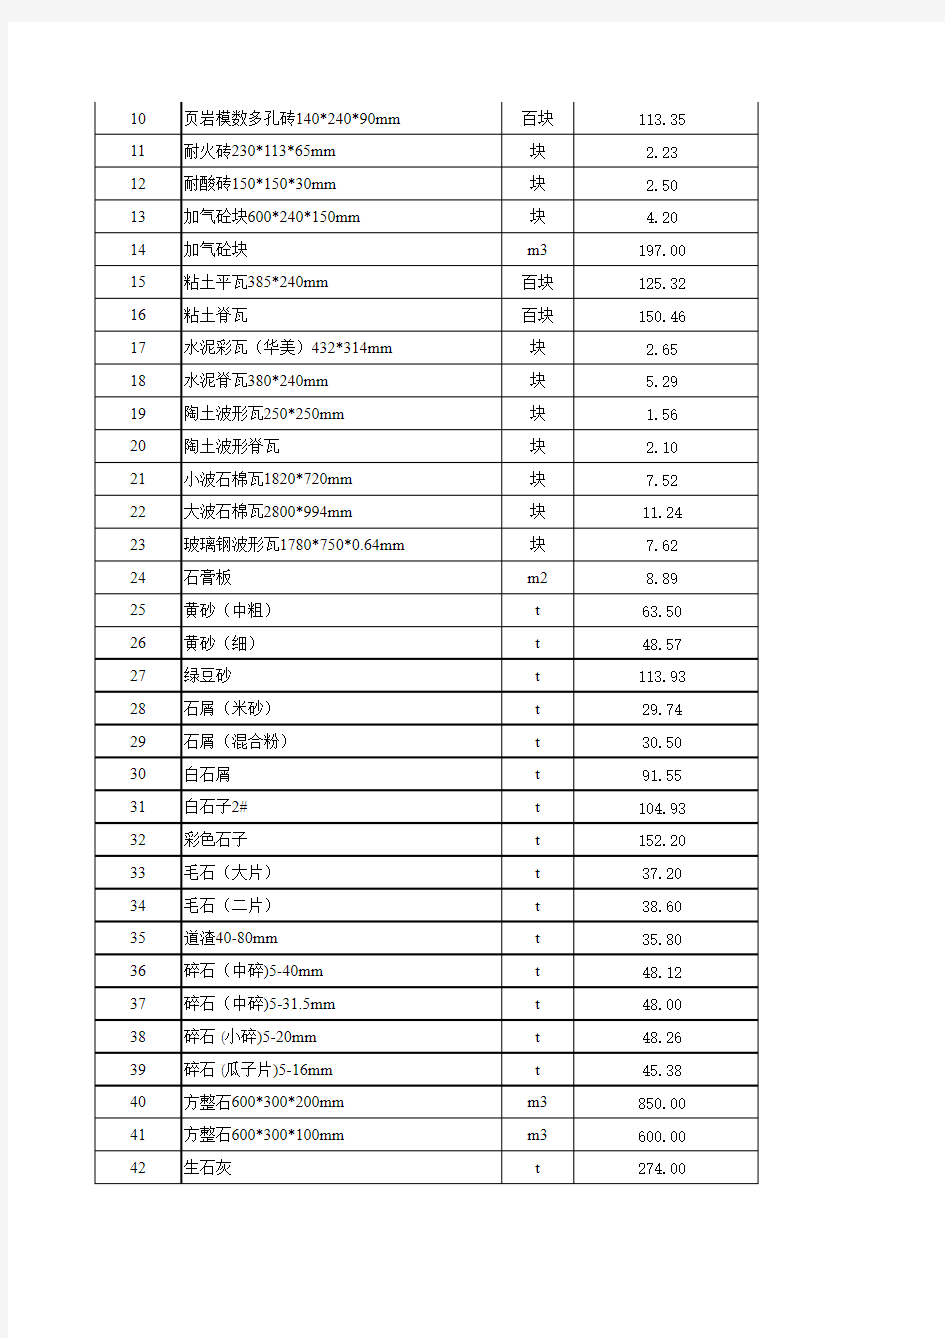 2010年度南京材料价格